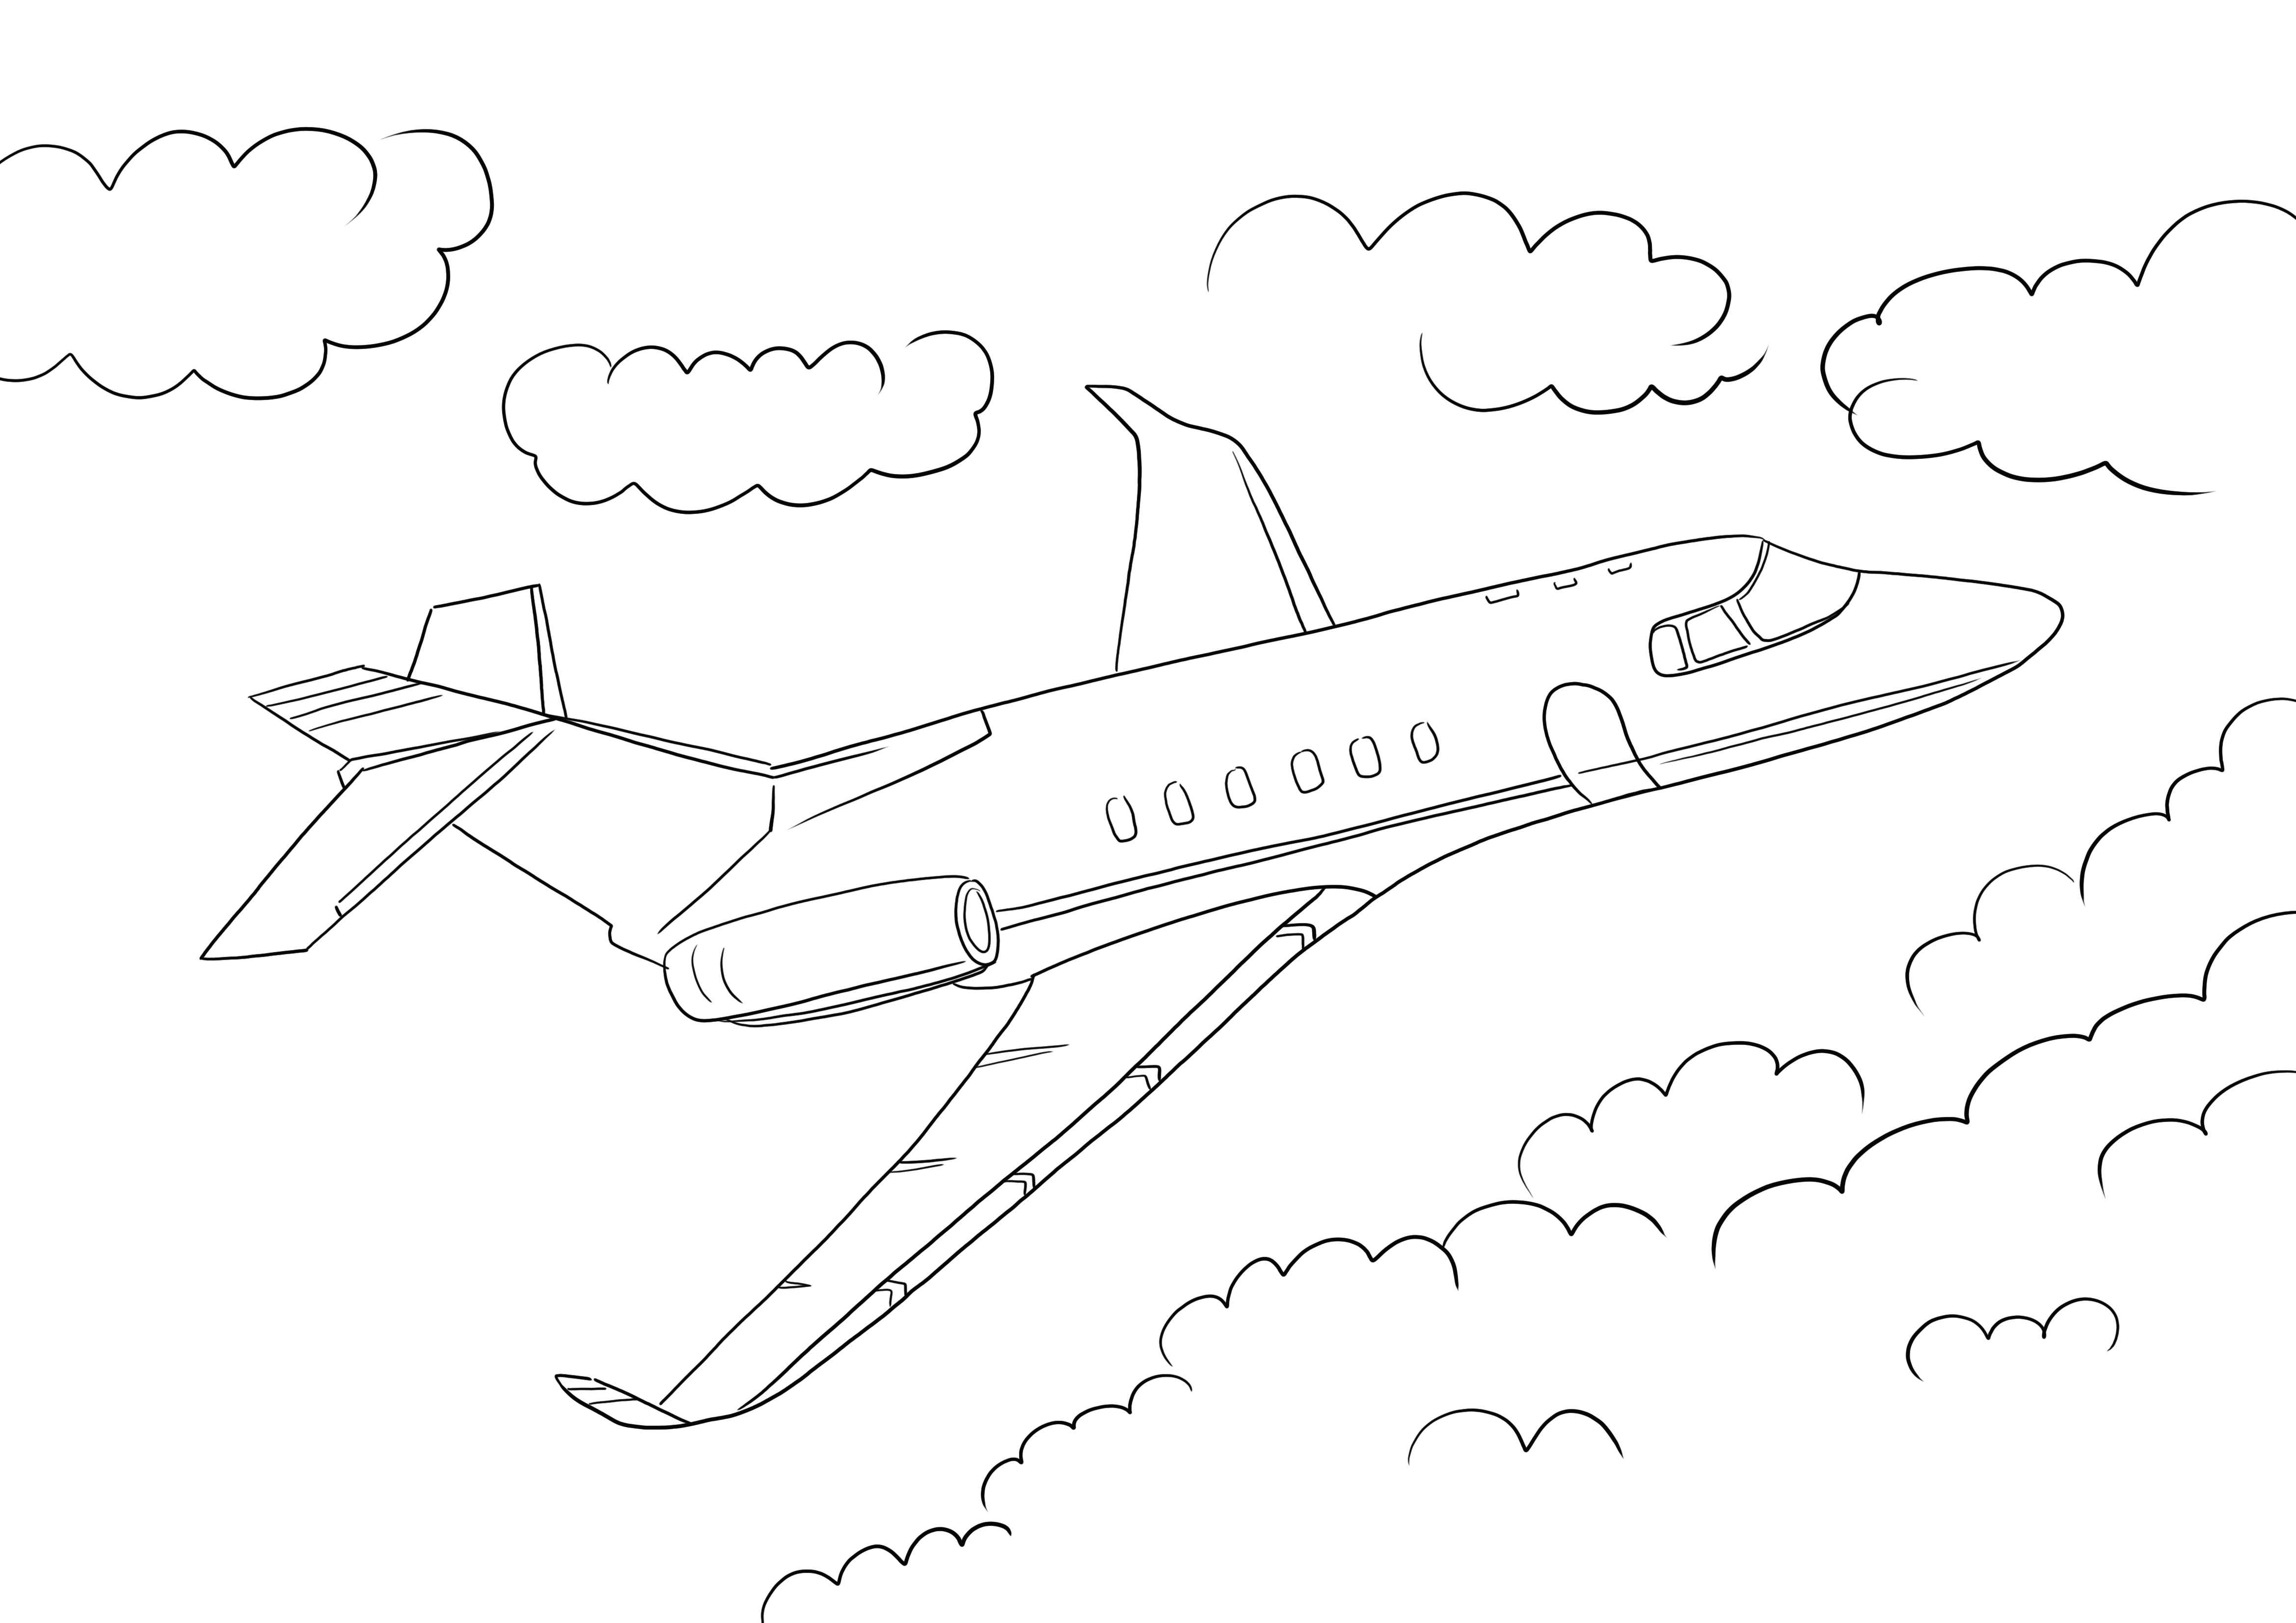 Easy Jet Airplane za darmo do wydrukowania i kolorowania dla dzieci w każdym wieku